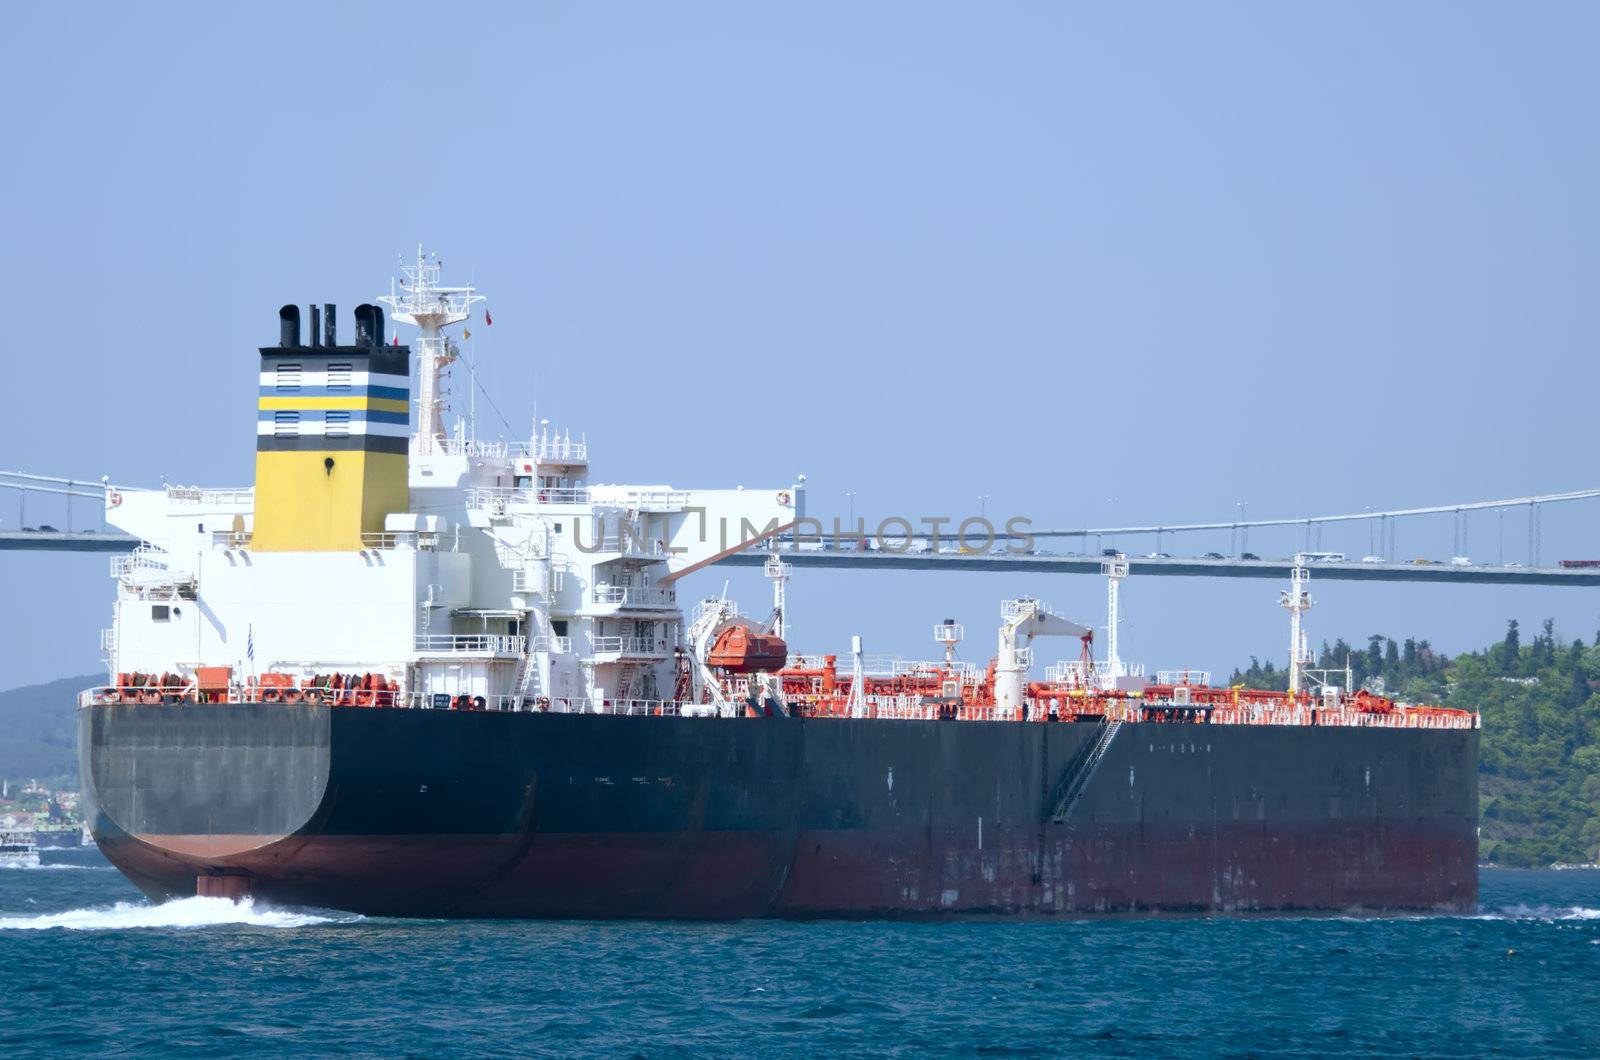 LNG tanker in the Bosphorus by njaj